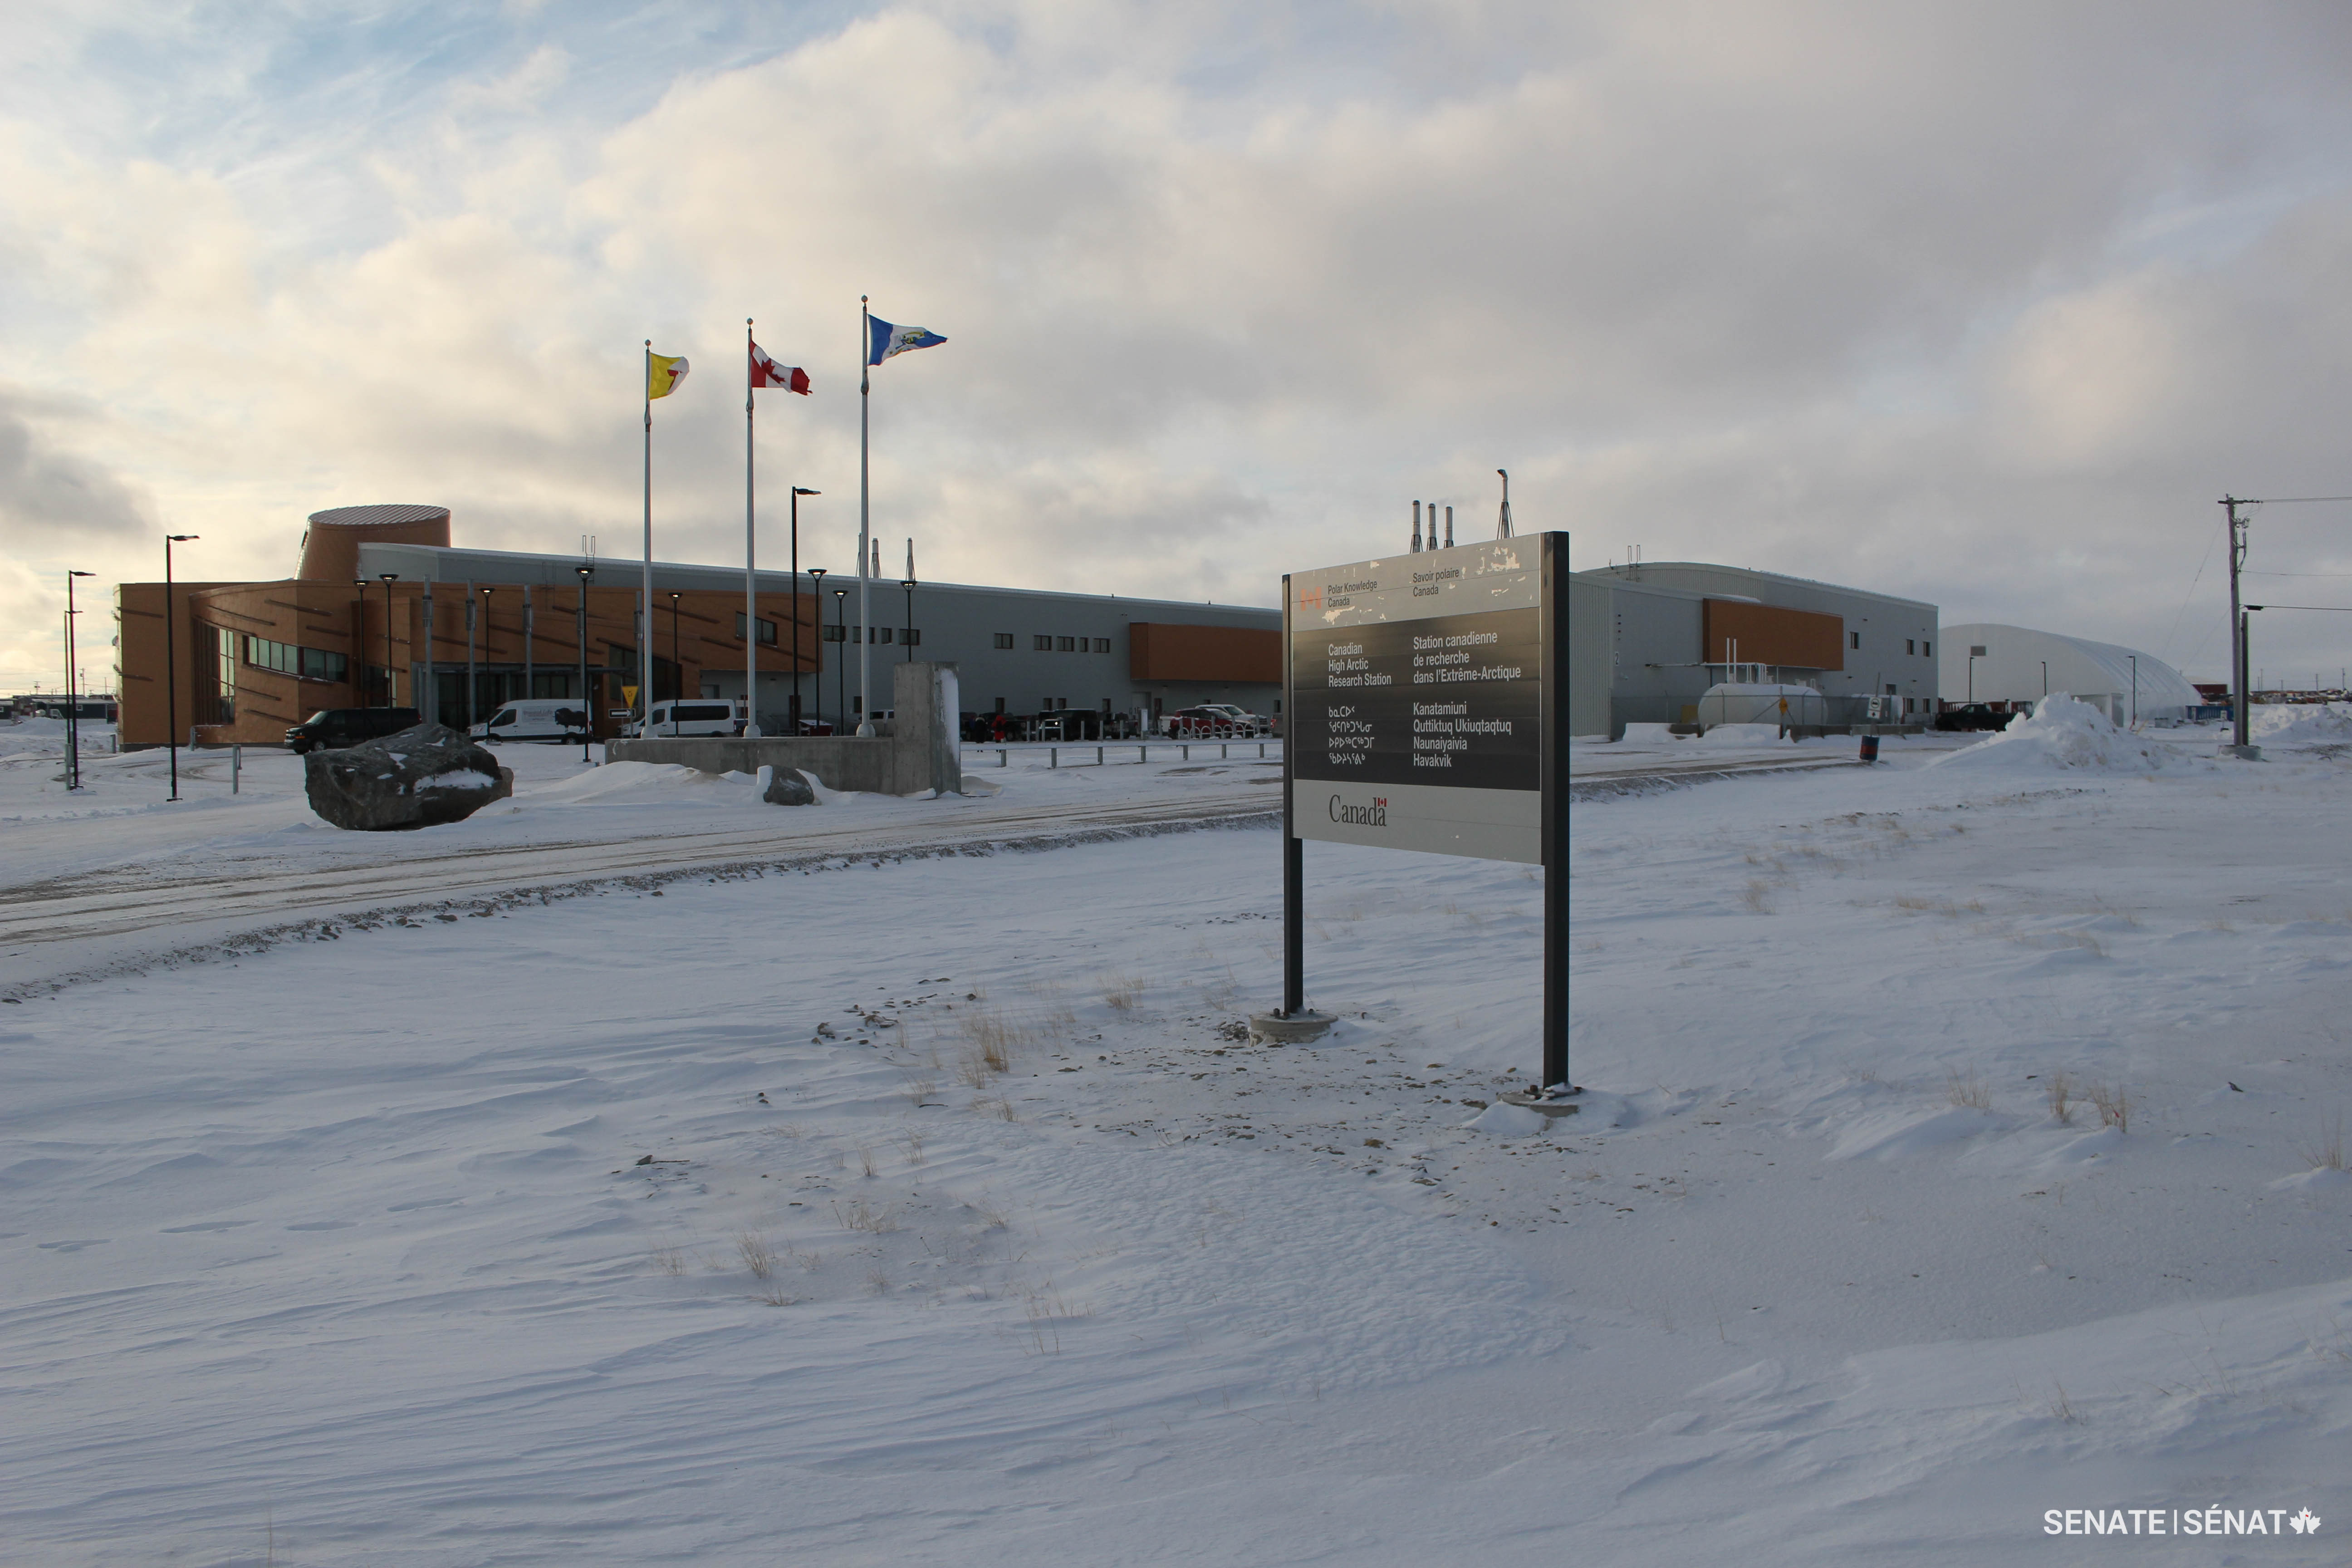 Même si Cambridge Bay, sur l’île Victoria au Nunavut, se trouve au nord du cercle polaire, elle peut se vanter de posséder une installation scientifique de pointe : la Station canadienne de recherche dans l’Extrême-Arctique, dirigée par Savoir polaire Canada.